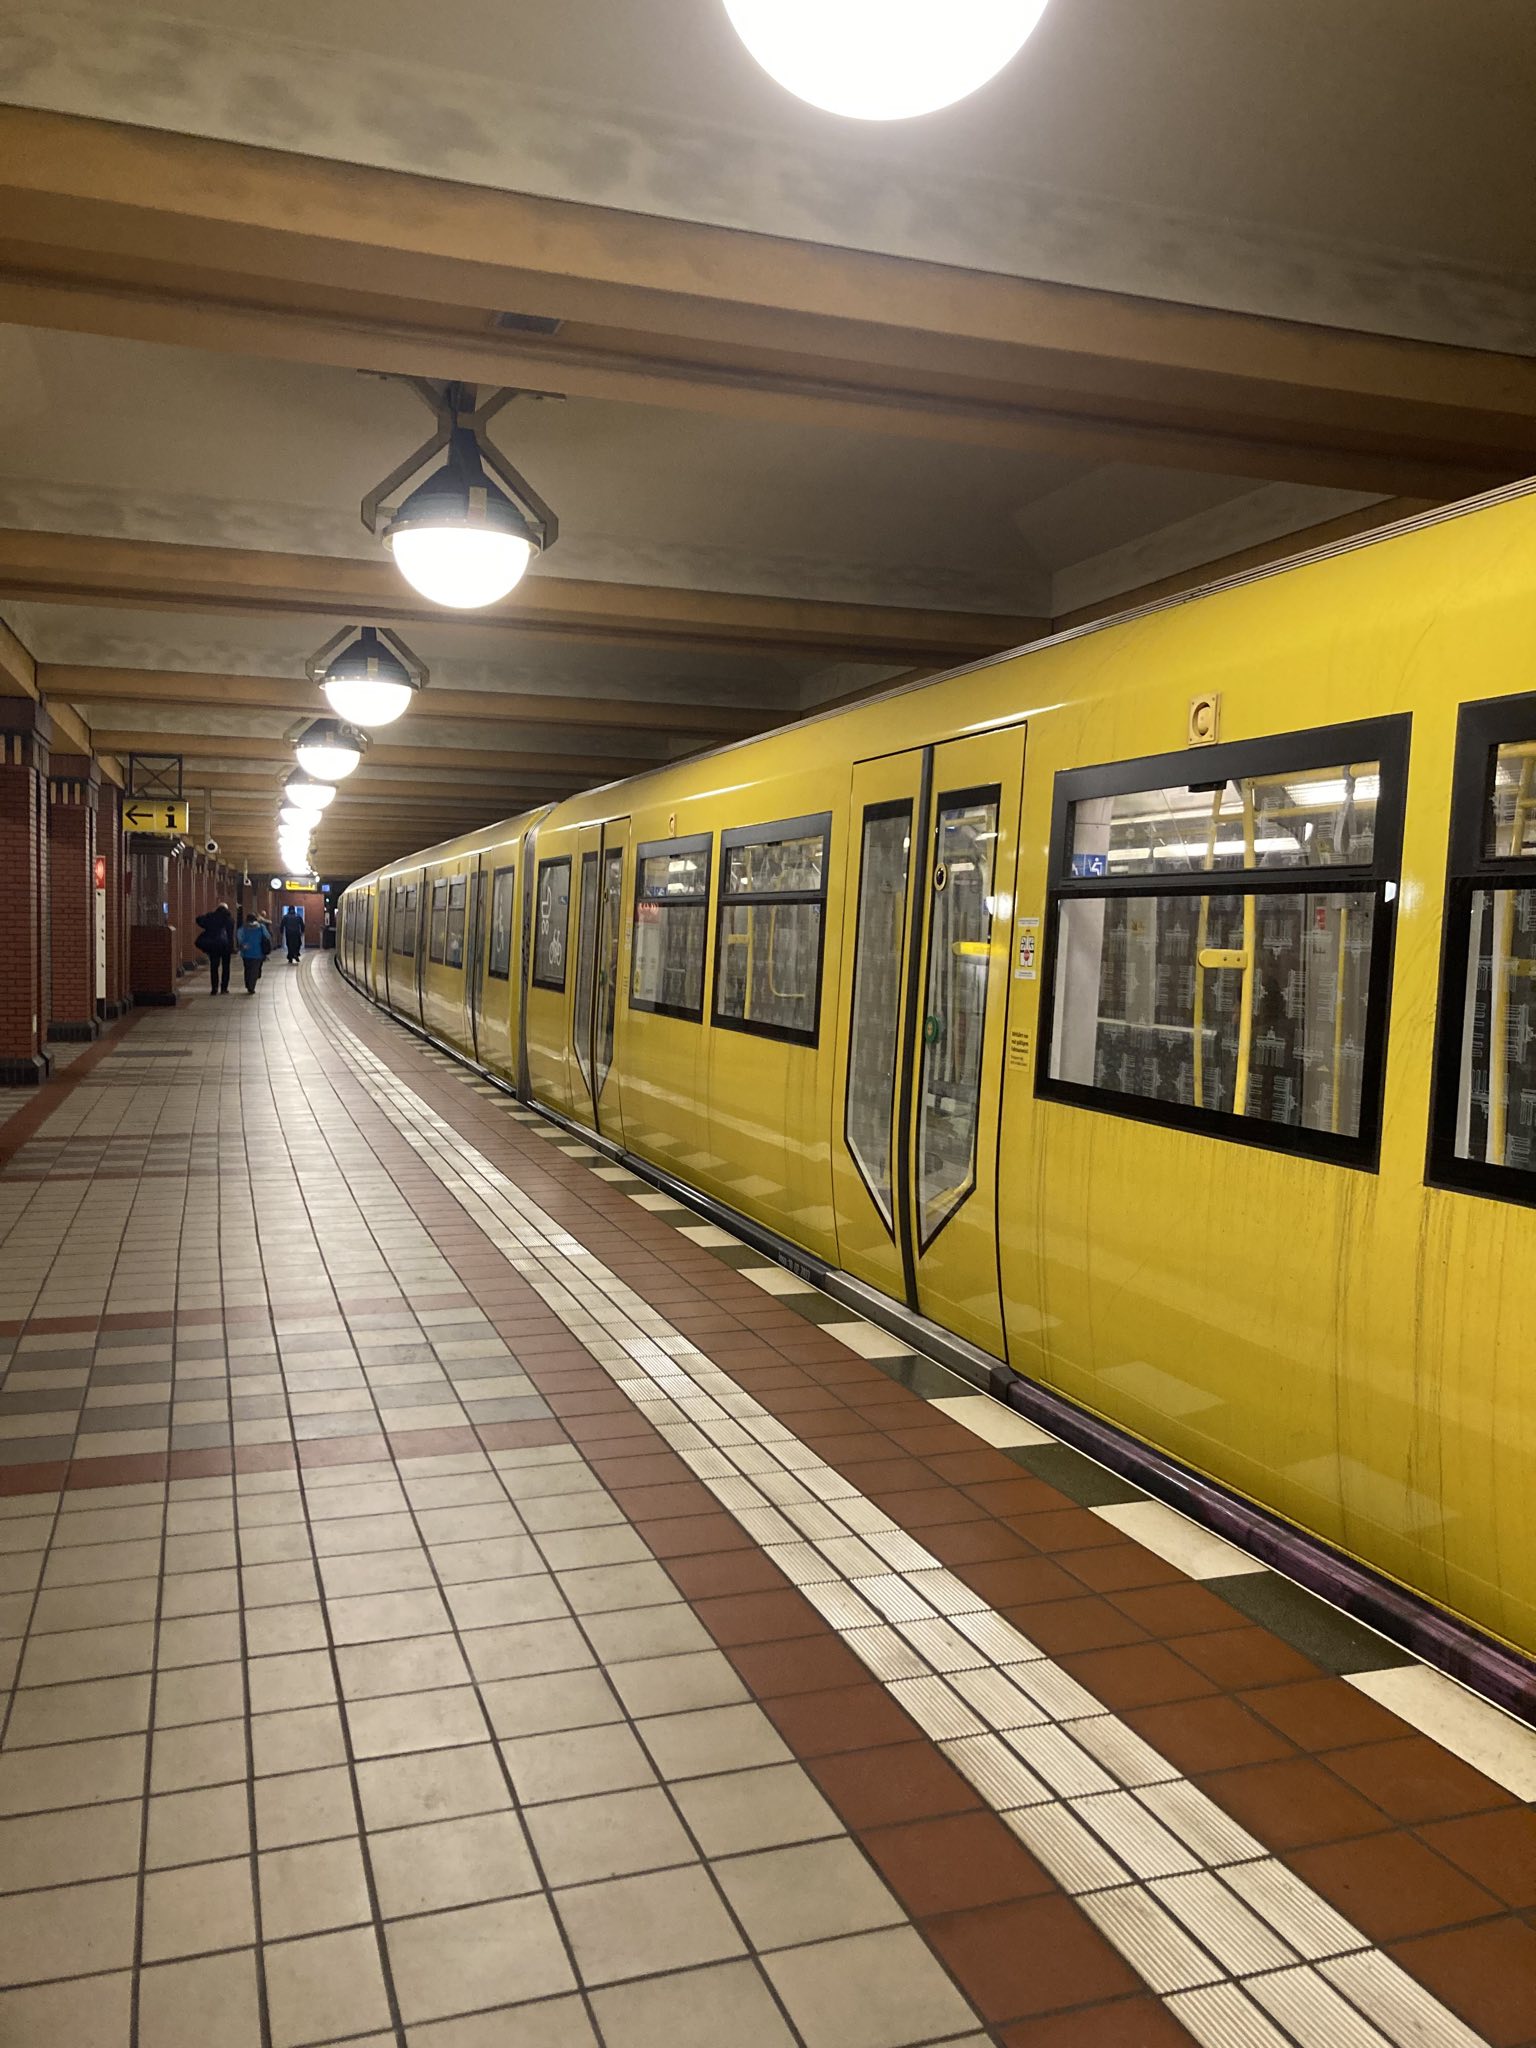 Foto zeigt die Ubahn Station Rathaus Reinickendorf und eine U-Bahn die gerade einfährt.